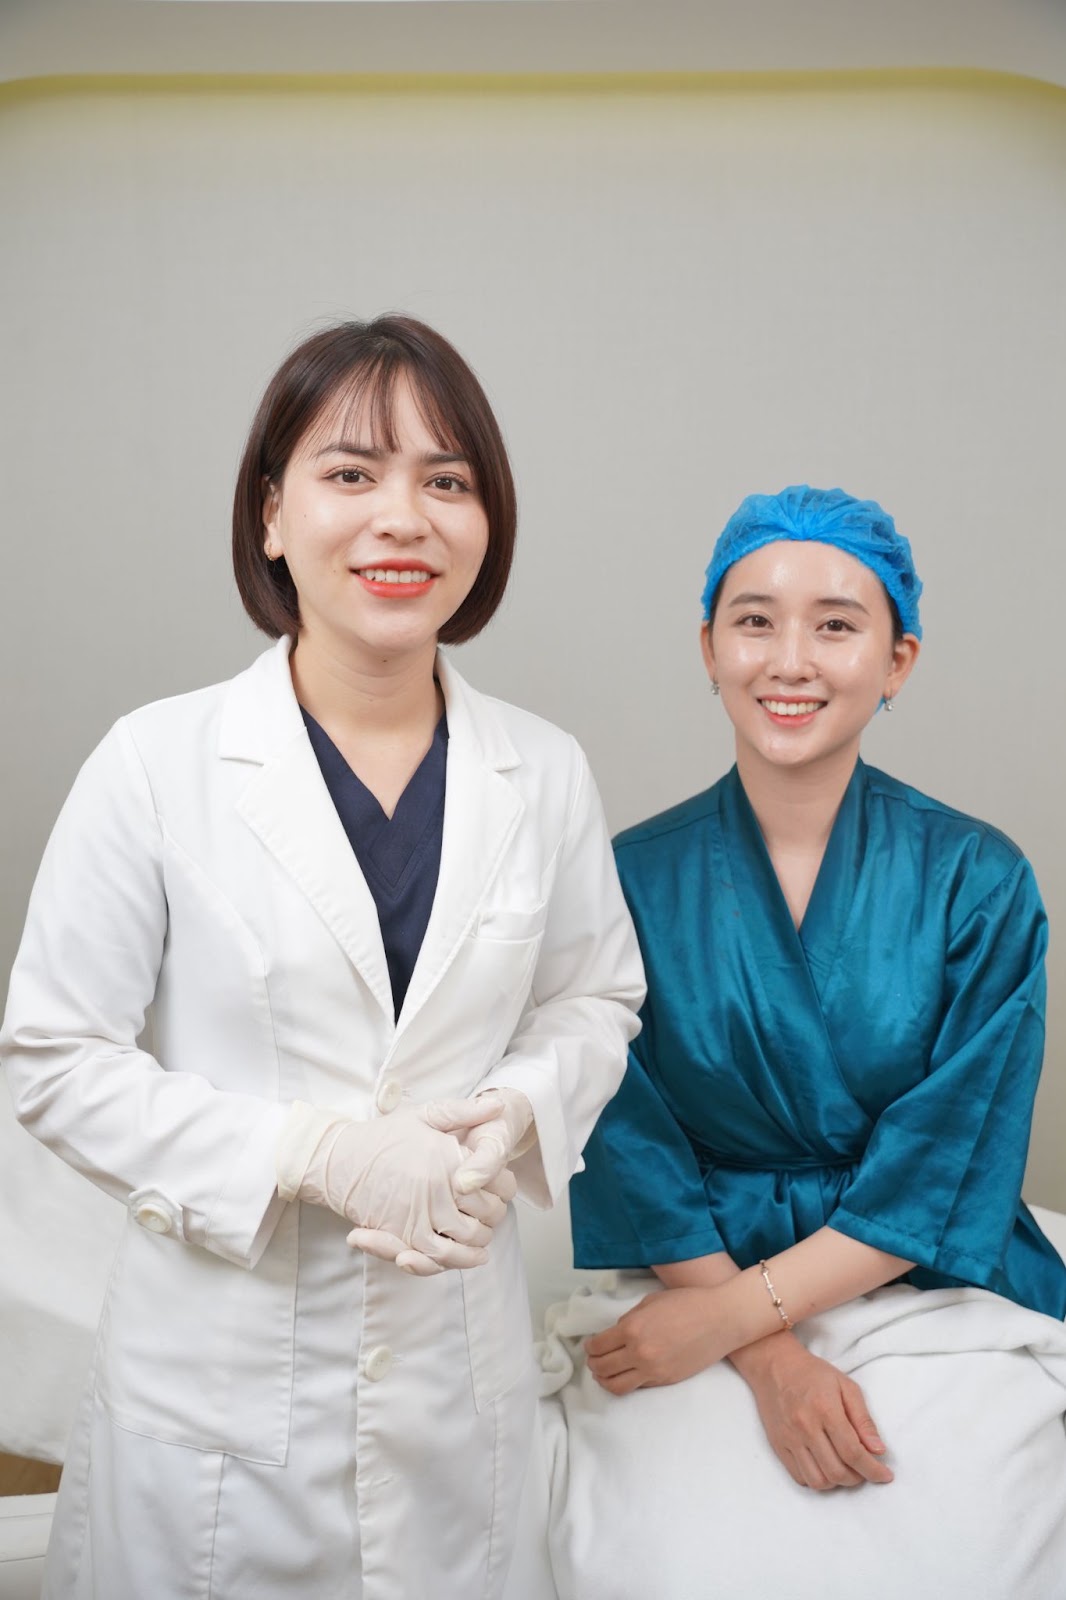 Chân dung bác sĩ thẩm mỹ nội khoa Nguyễn Thị Huế Anh check in cùng khách hàng sau khi thực hiện liệu trình làm đẹp da